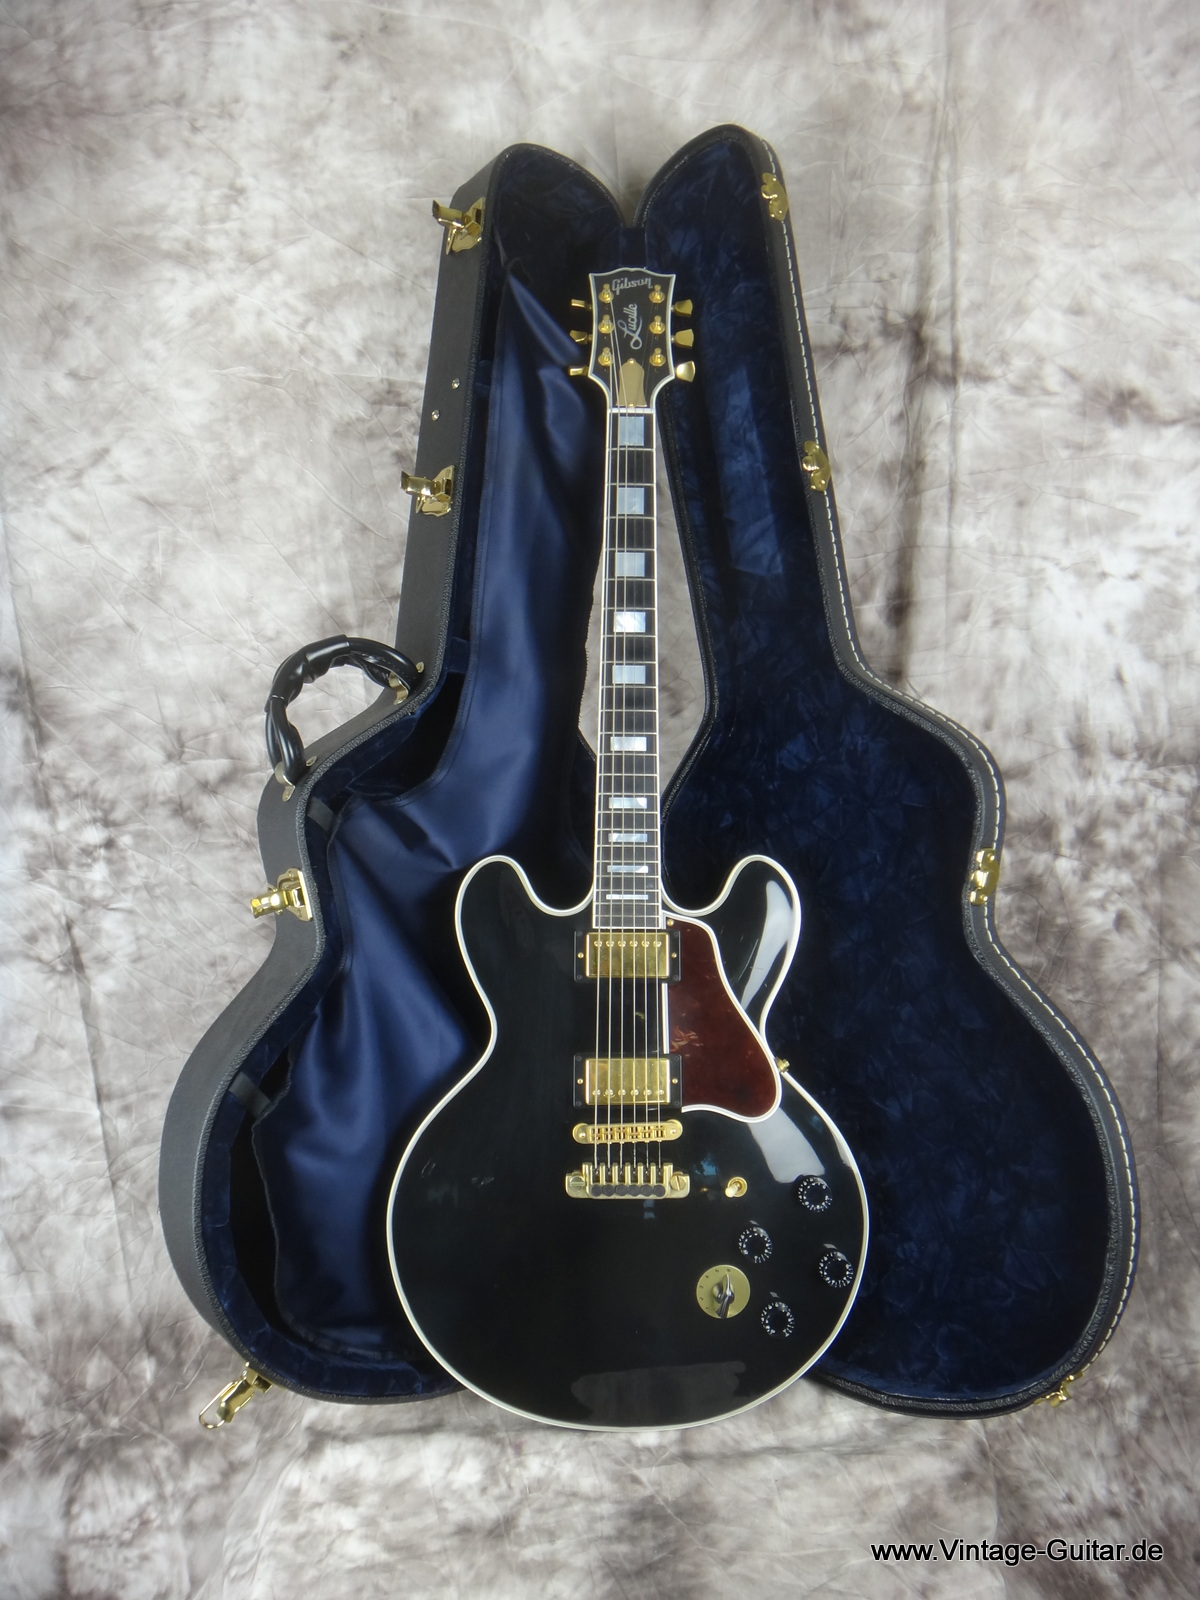 Gibson_Lucille-B-B-King-ES-355-black-001.JPG